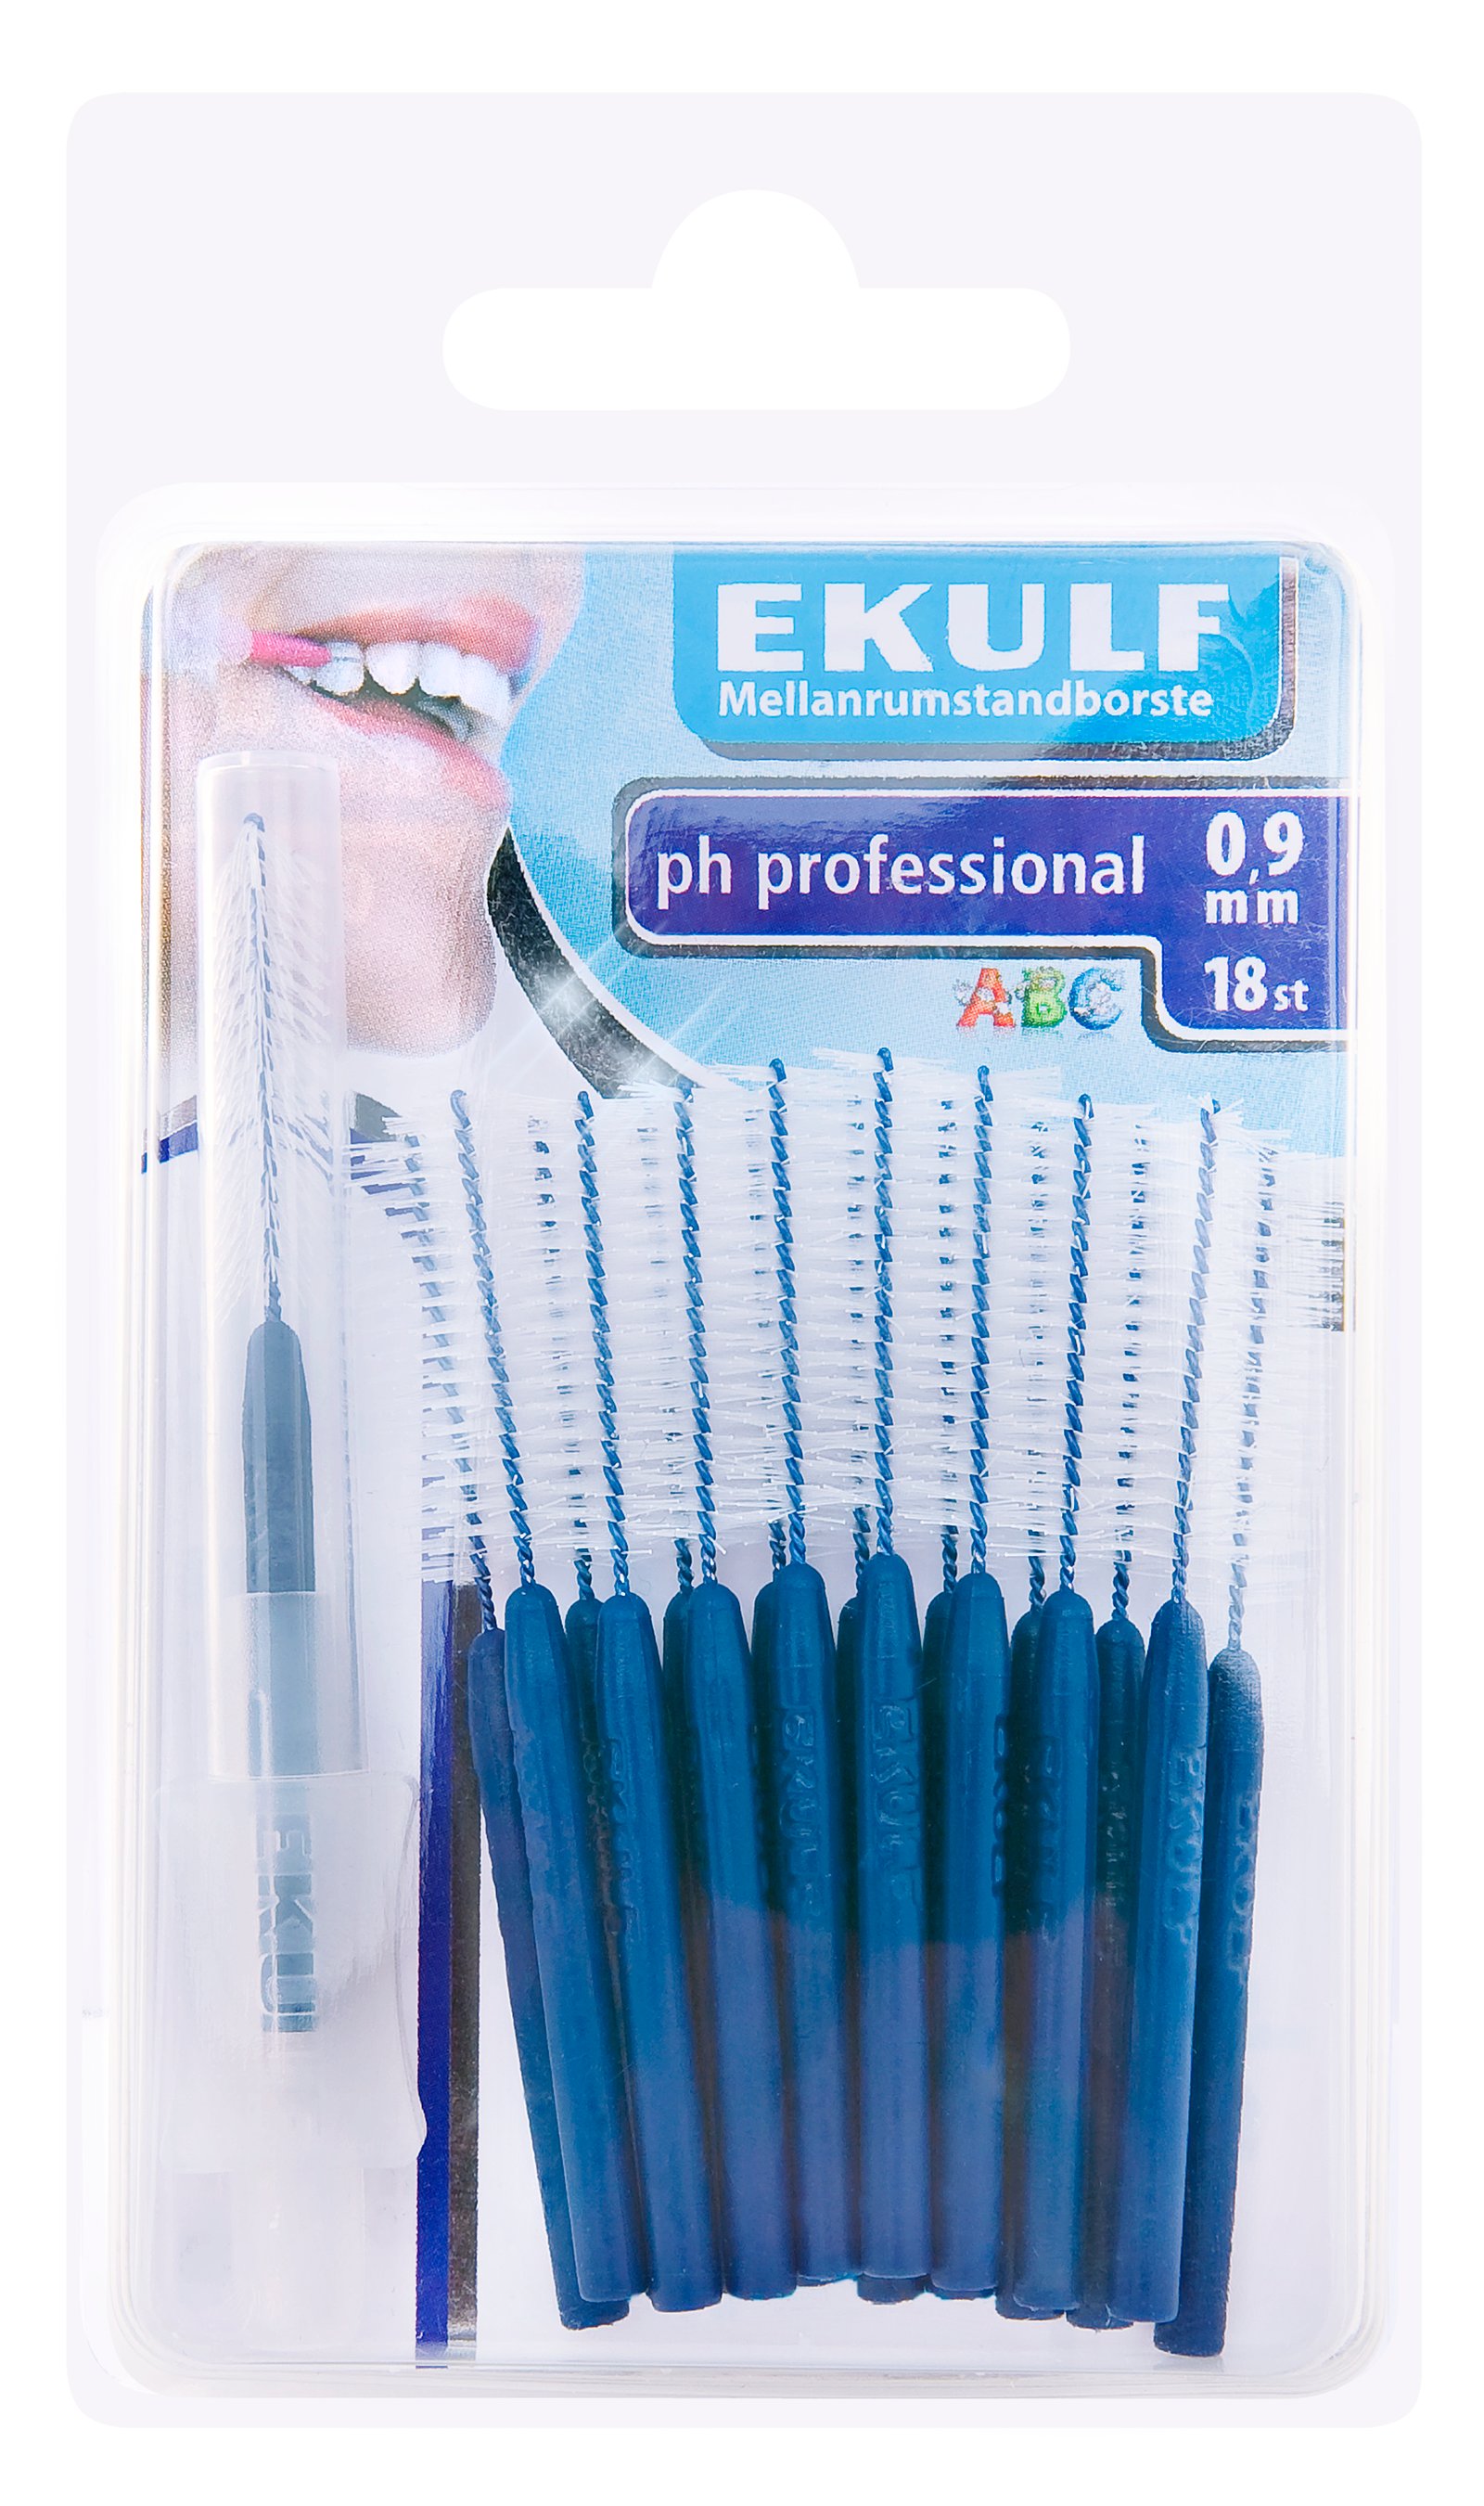 EKULF pH professional 0,9 mm